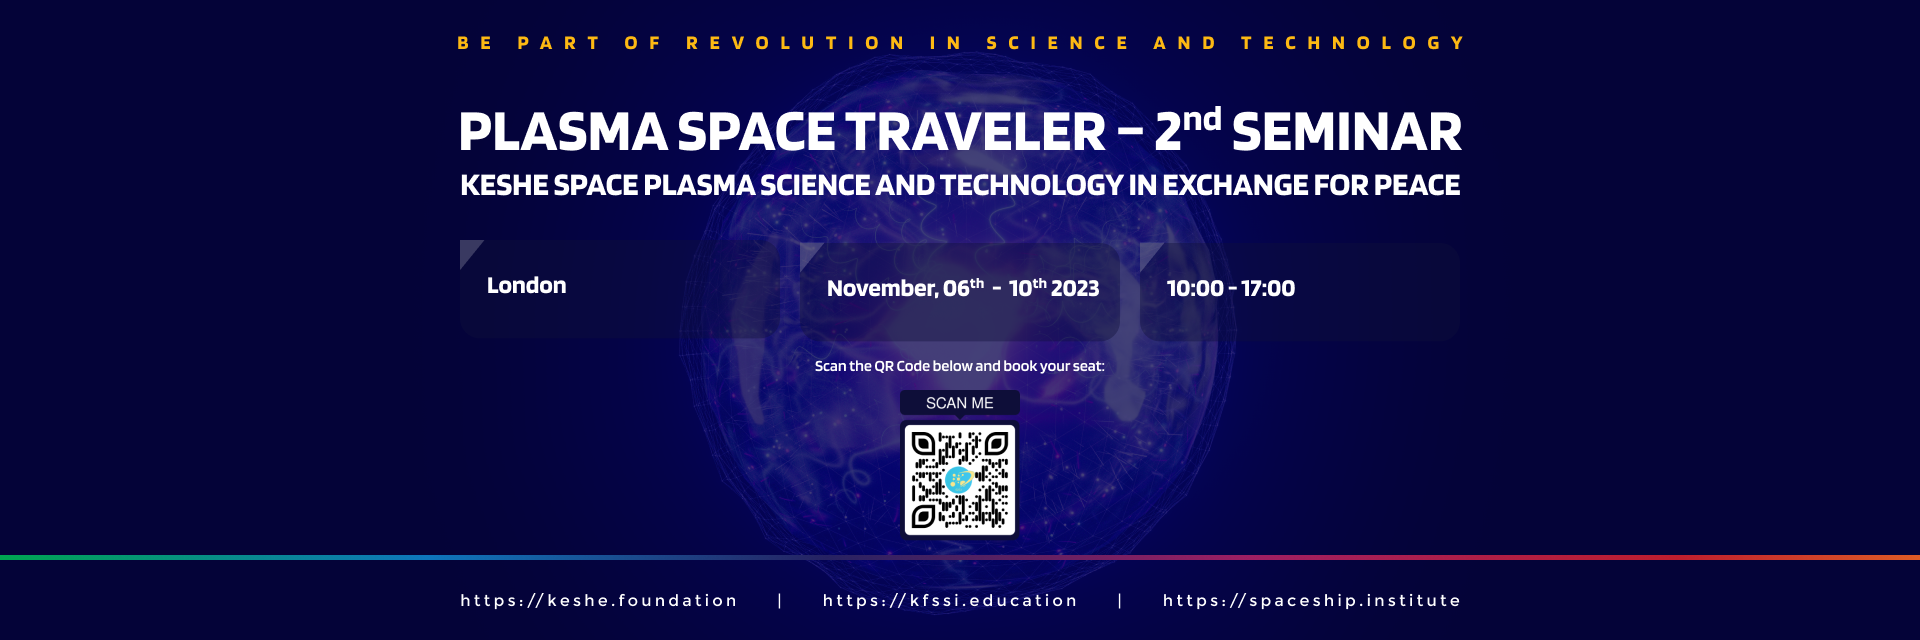 Plasma Space Traveler 2nd Seminar